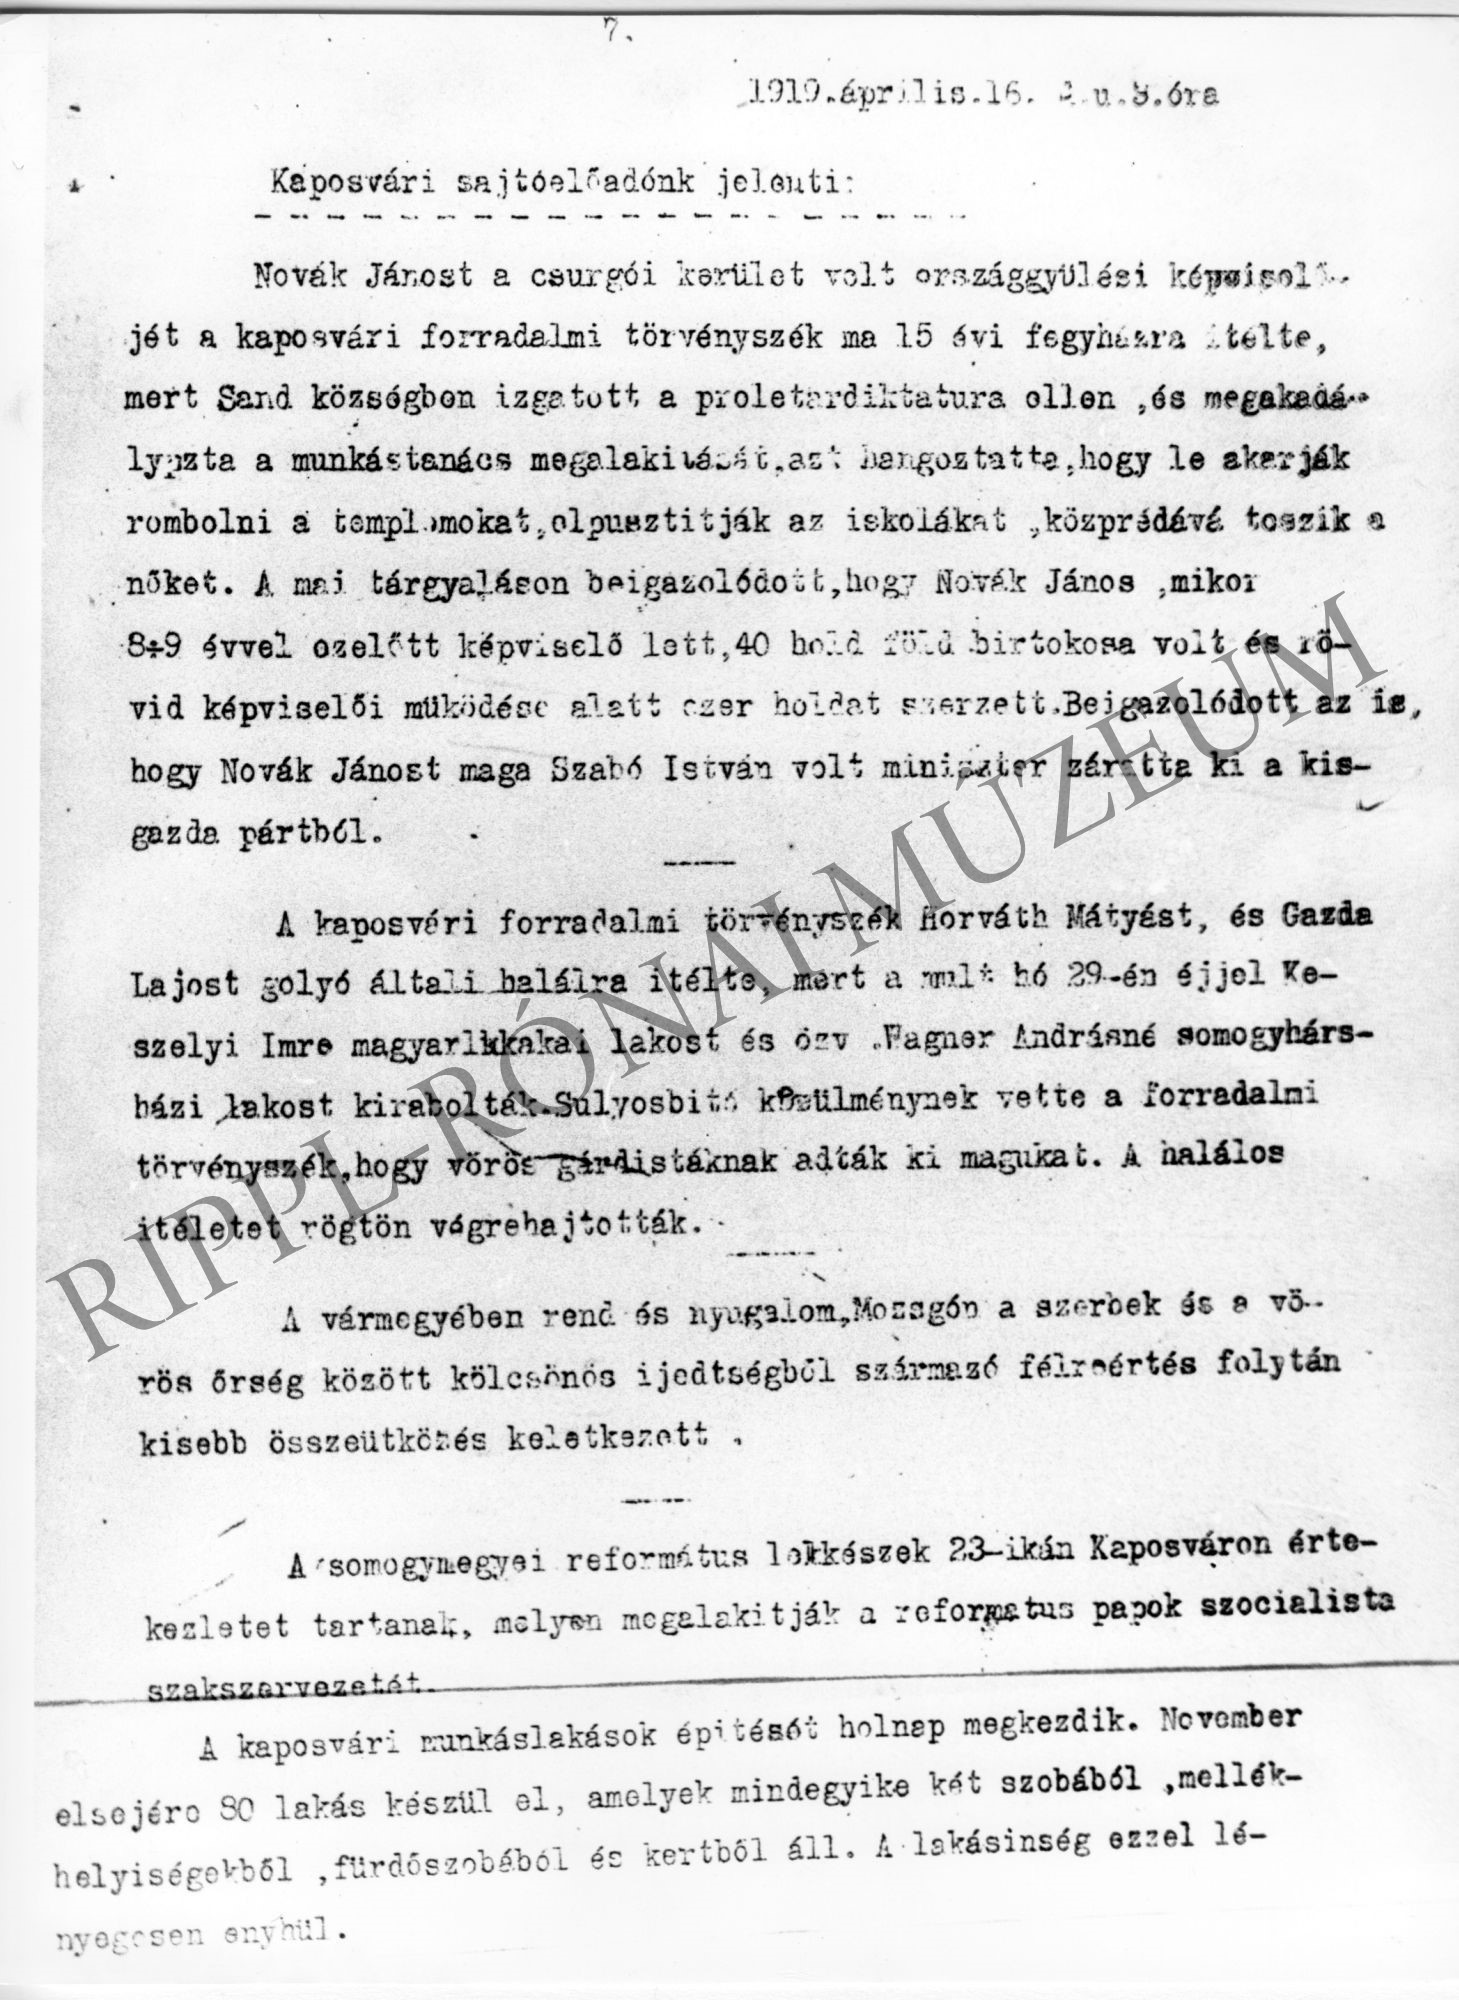 A Kaposvári sajtóelőadó jelenti: (1919. április 16.): Novák János volt kisgazda országgyűlési képviselőt 15 évi fegyházra ítélte, tanácsköztársaság elleni izgat (Rippl-Rónai Múzeum CC BY-NC-SA)